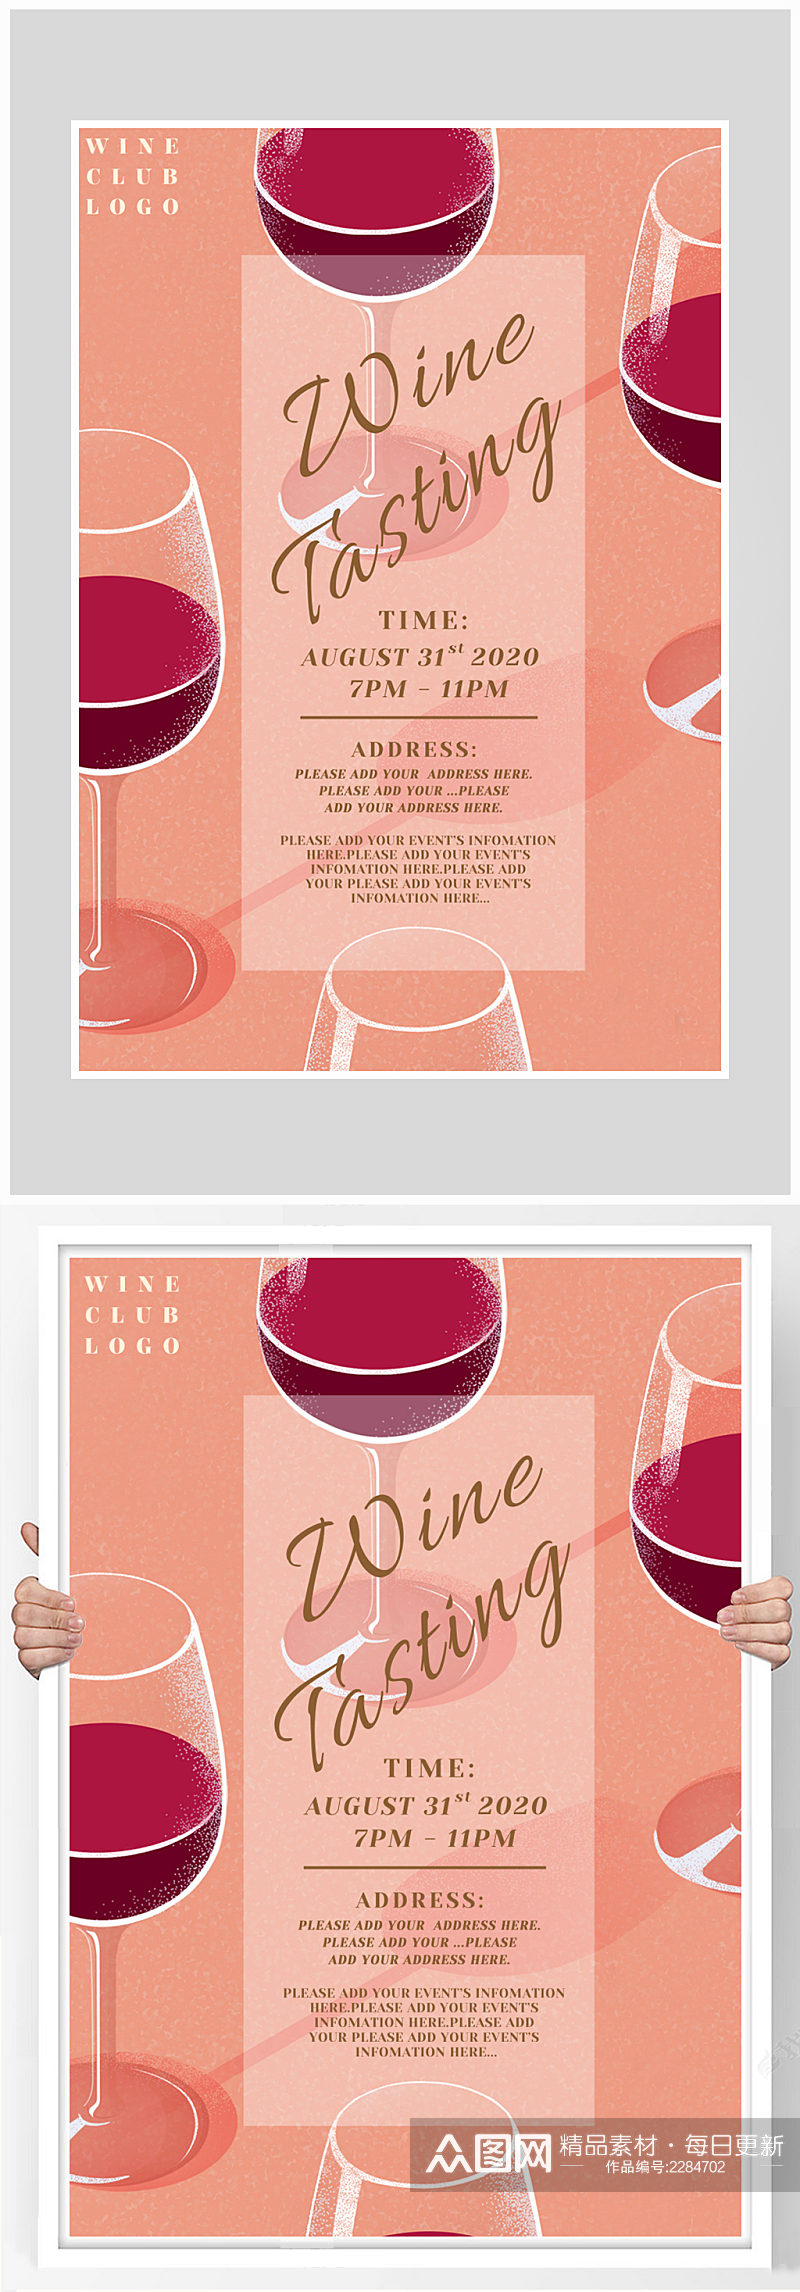 创意质感简约红酒大气海报设计素材